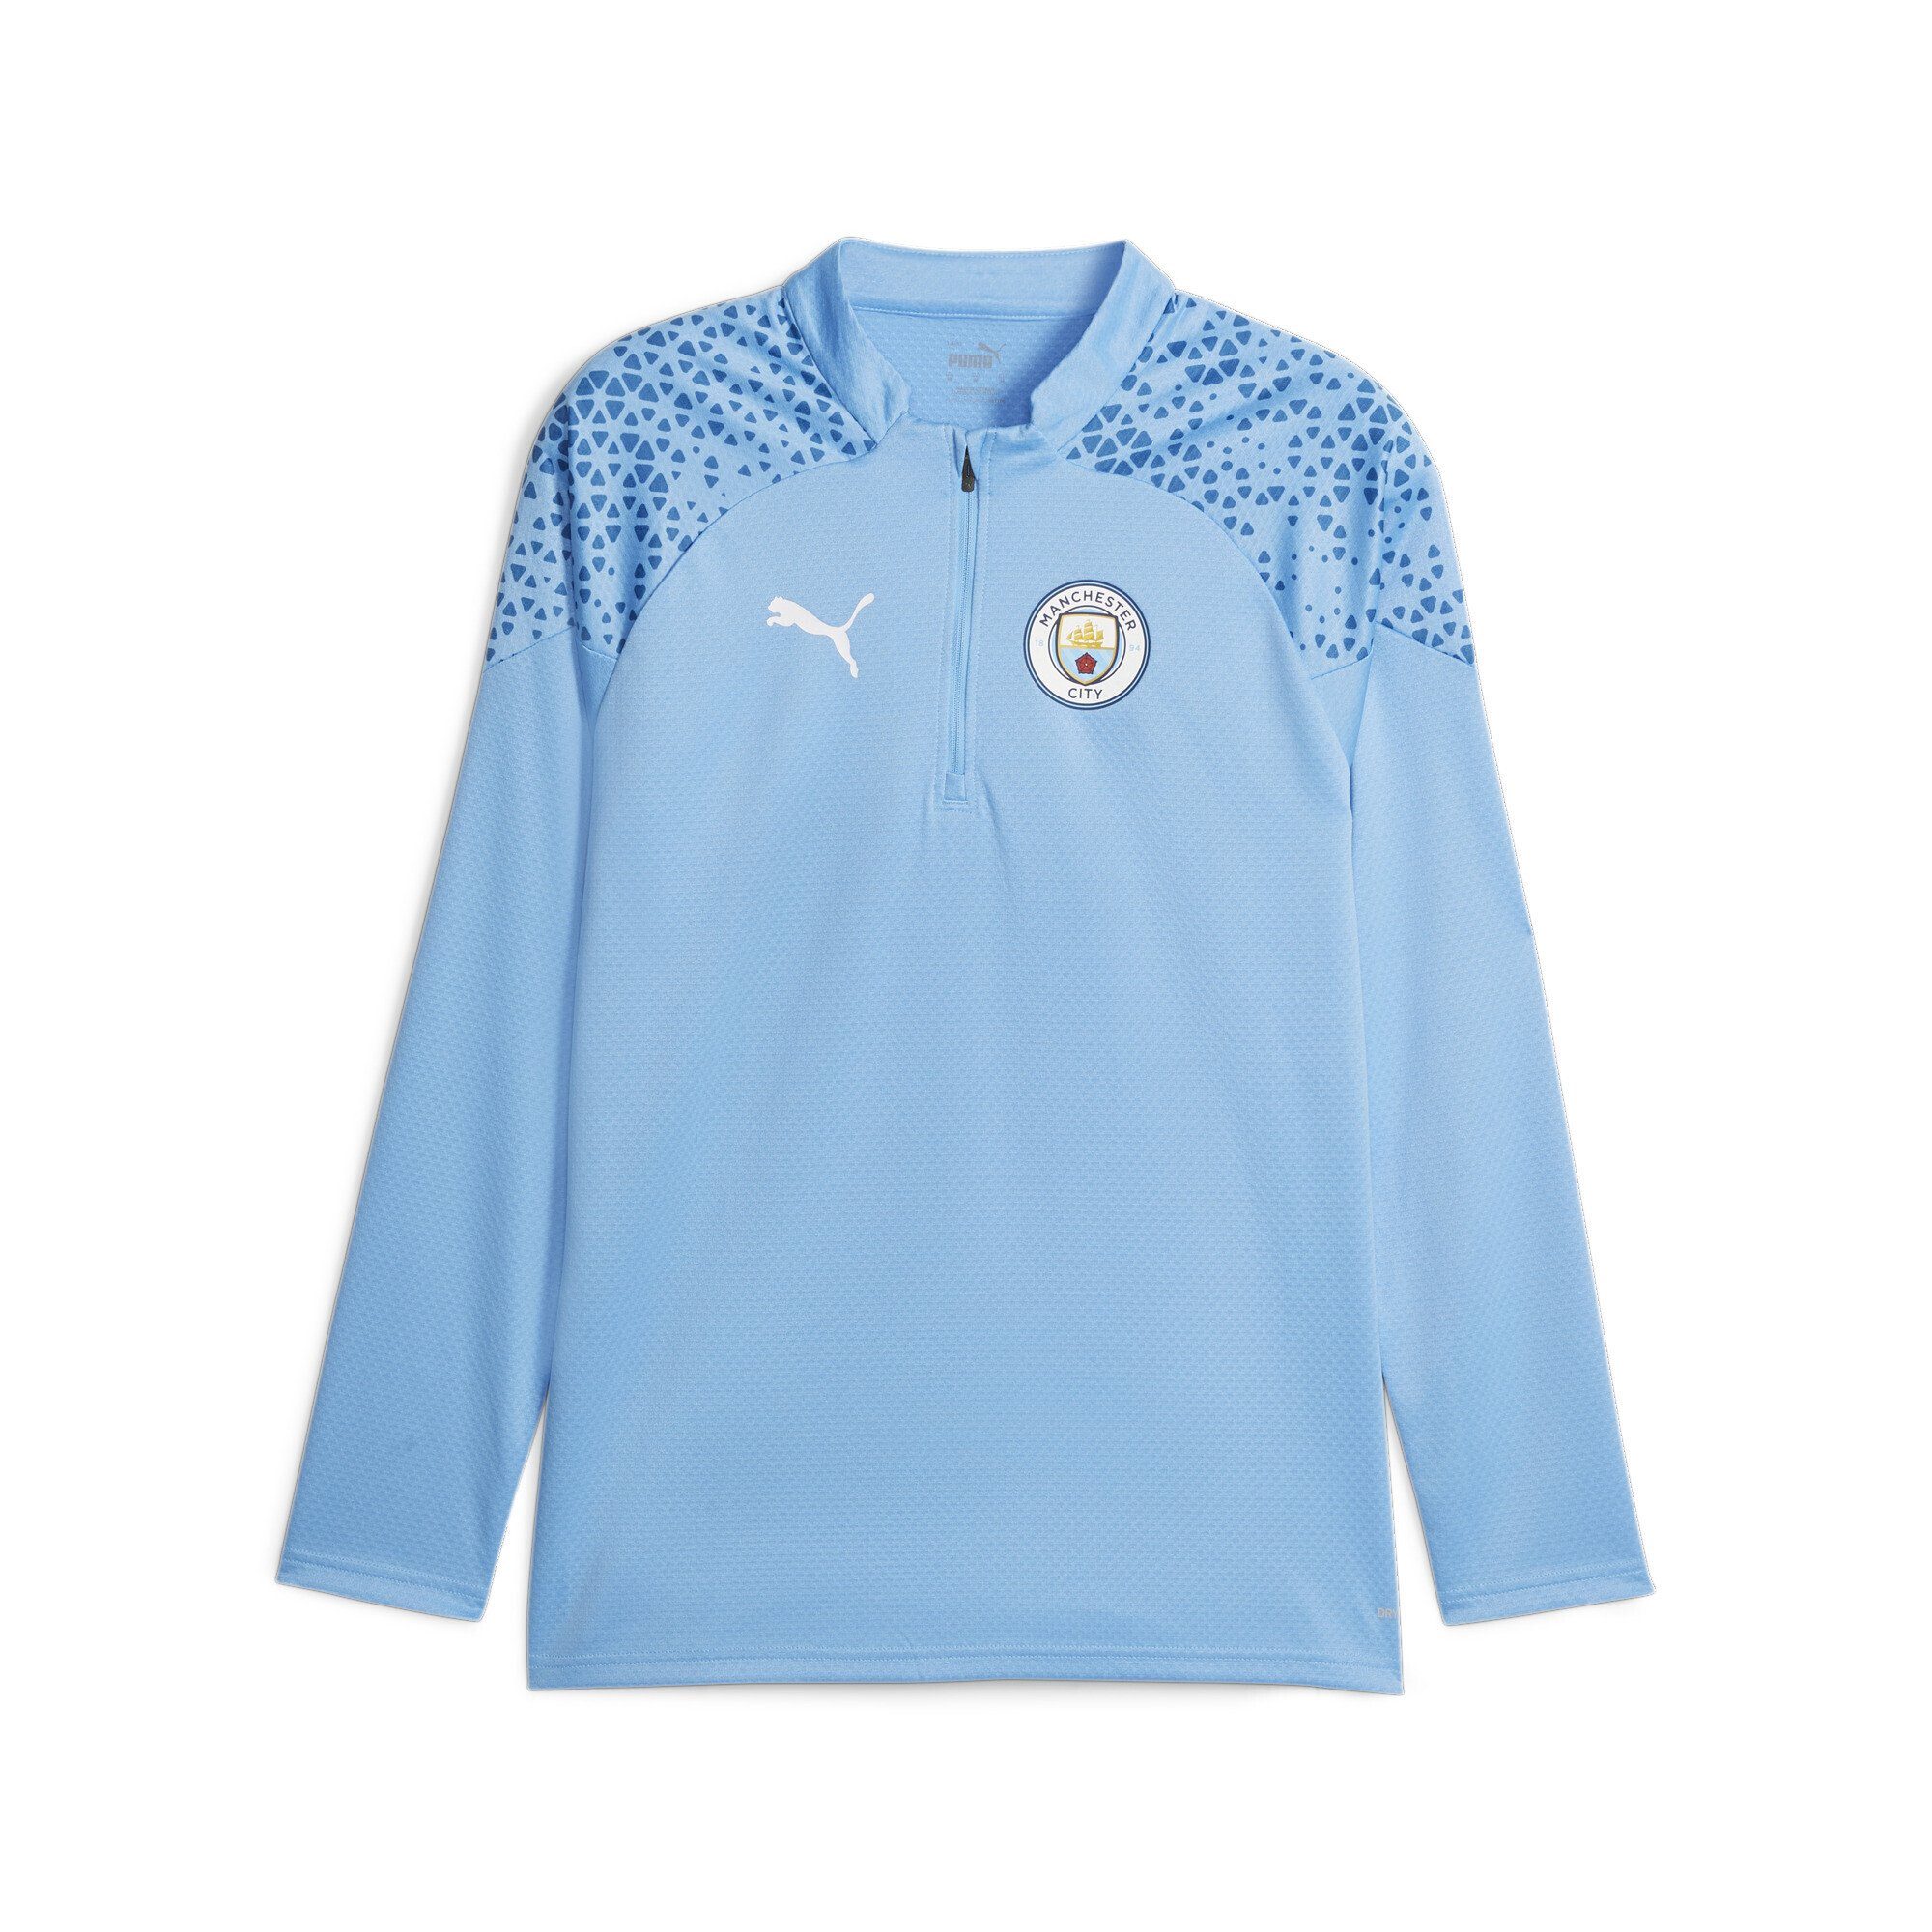 PUMA Trainingsshirt Manchester City Fußball-Trainings-Top mit Viertelreißverschluss Team Light Blue Lake